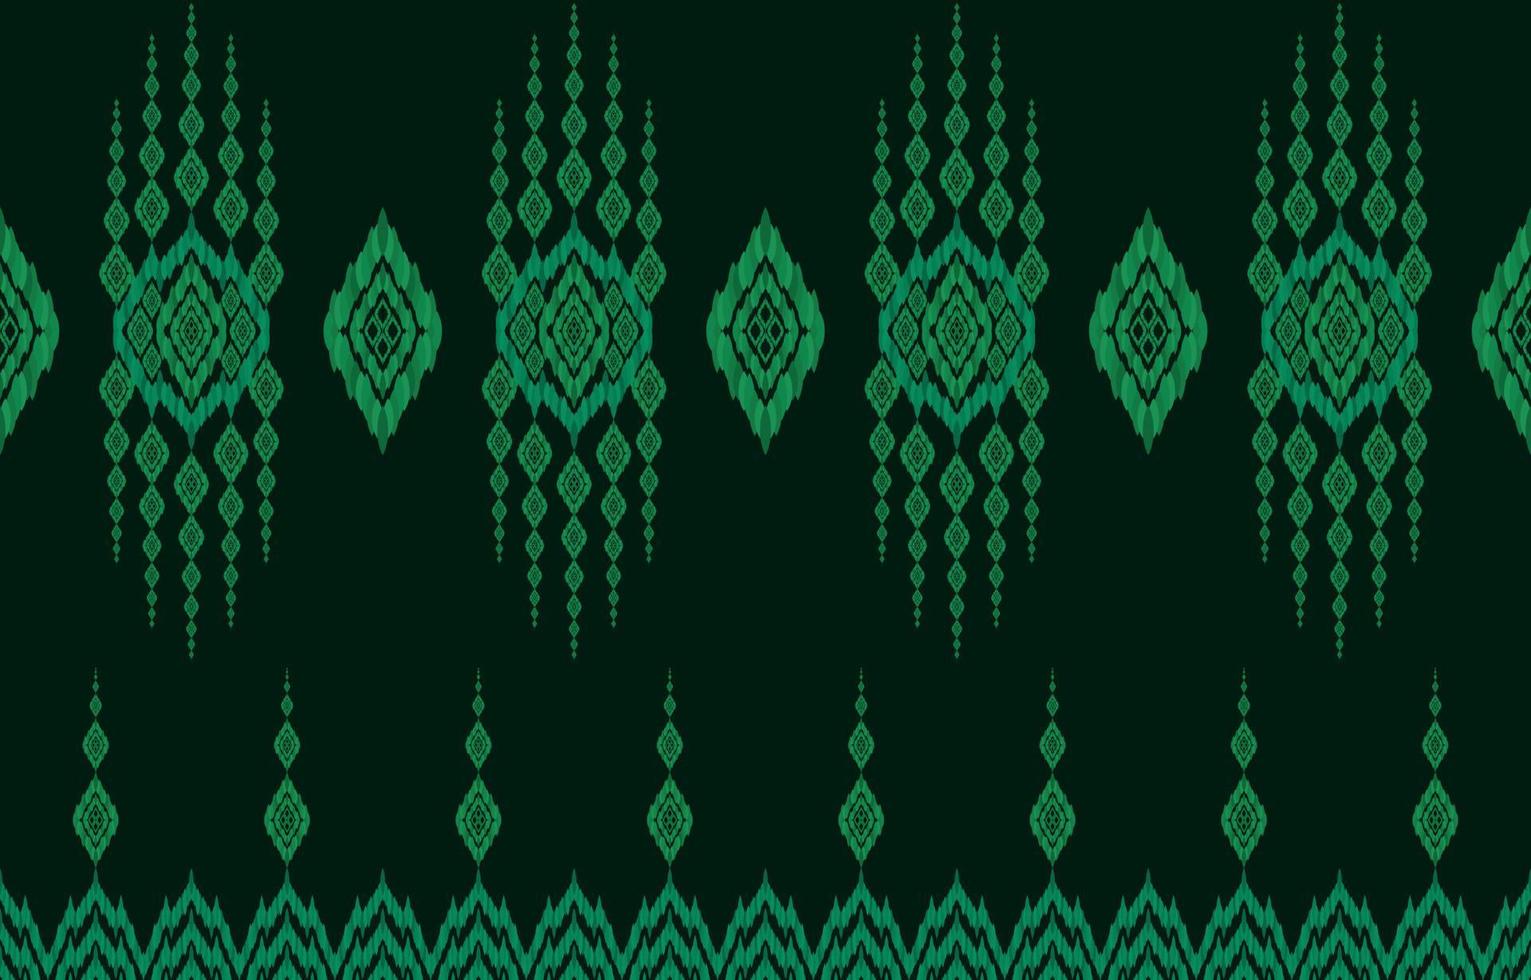 königlicher eleganter leuchtender dunkelgrüner hintergrund ikat nahtlose muster. geometrisch verzierte luxuriöse Linie ethnisches Ikat-Stoffmuster. asiatisches Folk-Print-Vektordesign für Bekleidungstextilien im Retro-Stil. vektor